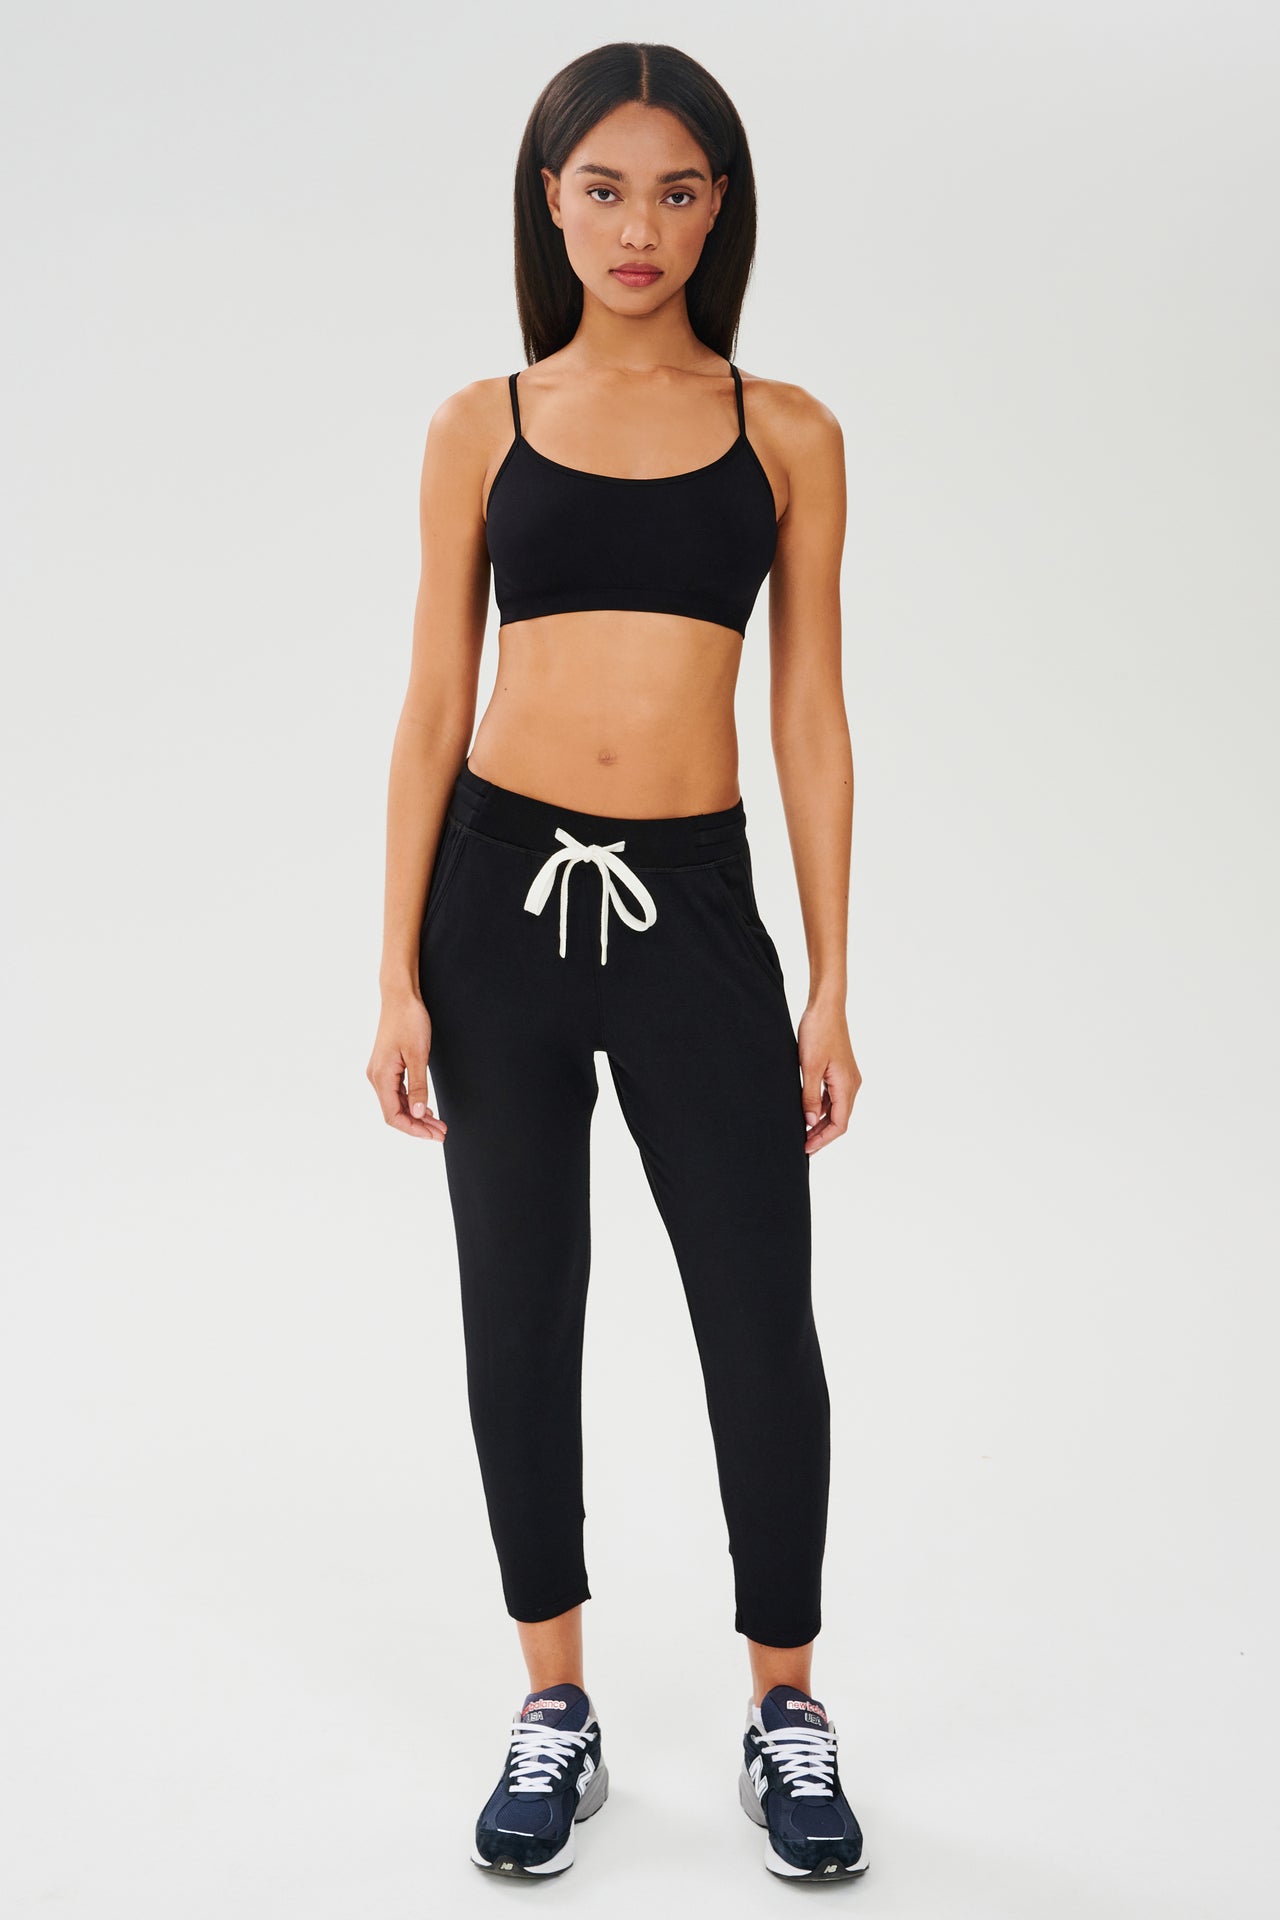 A woman wearing black joggers and a white Splits59 Loren Seamless Bra - Black top.